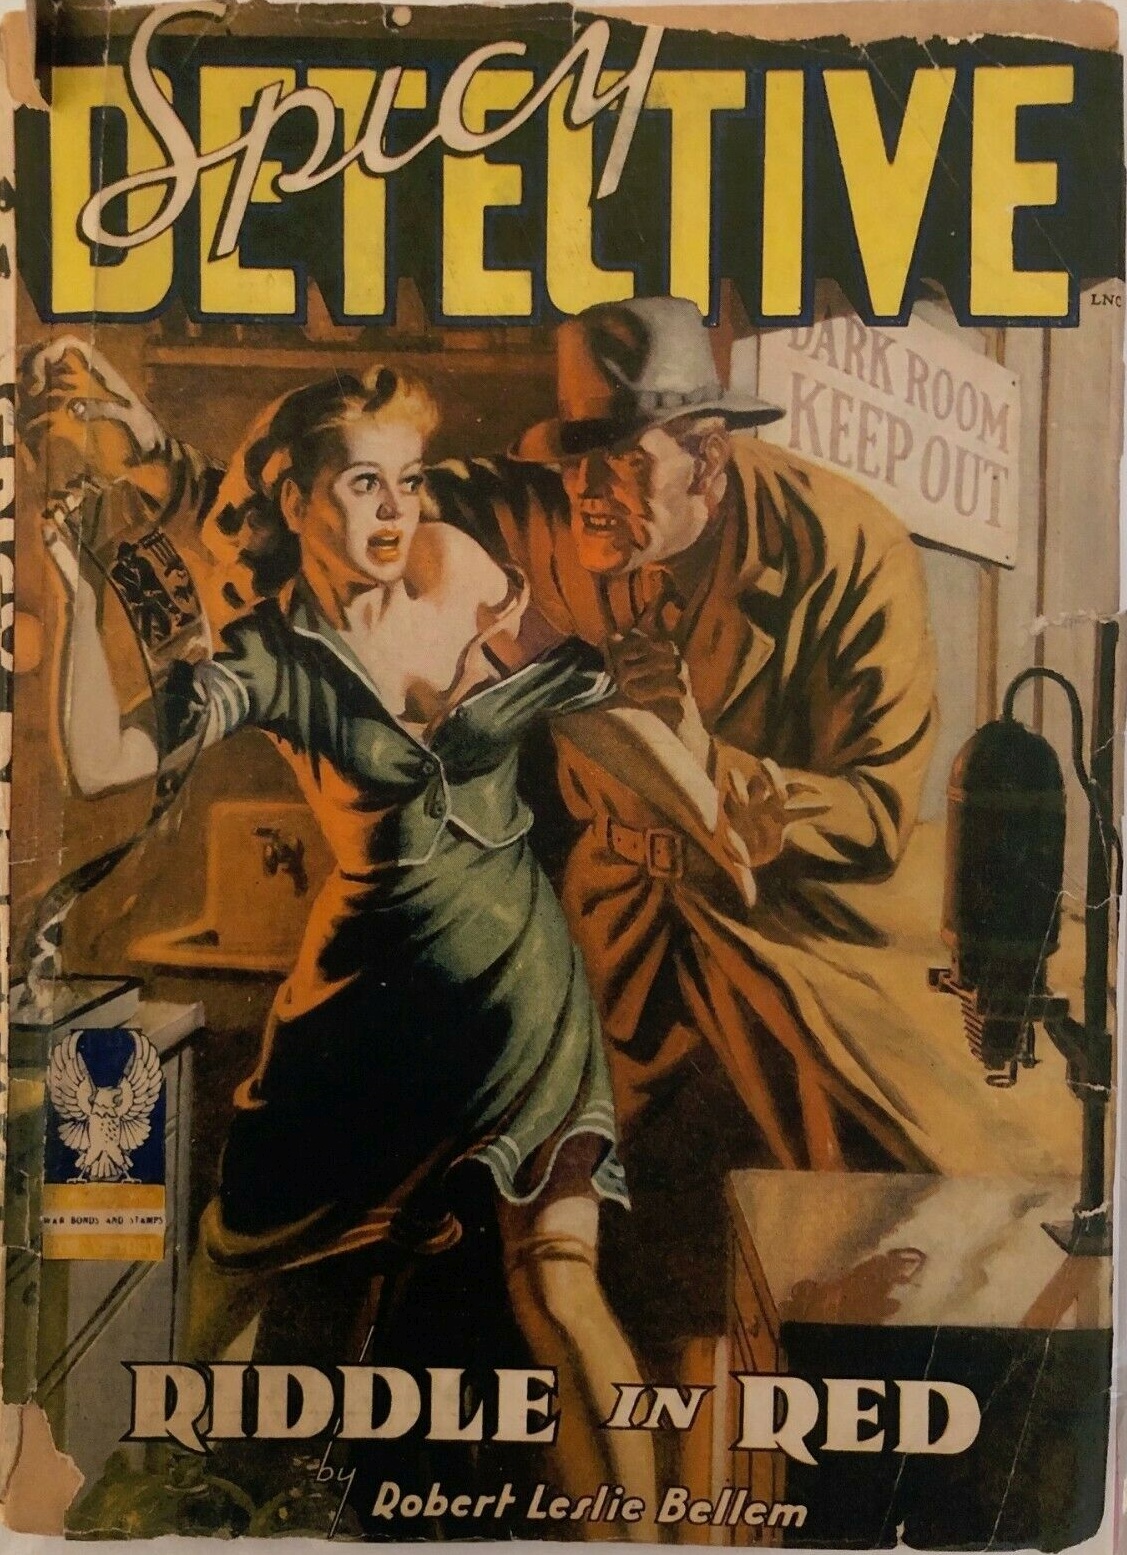 SPICY DETECTIVE Magazine November 1942